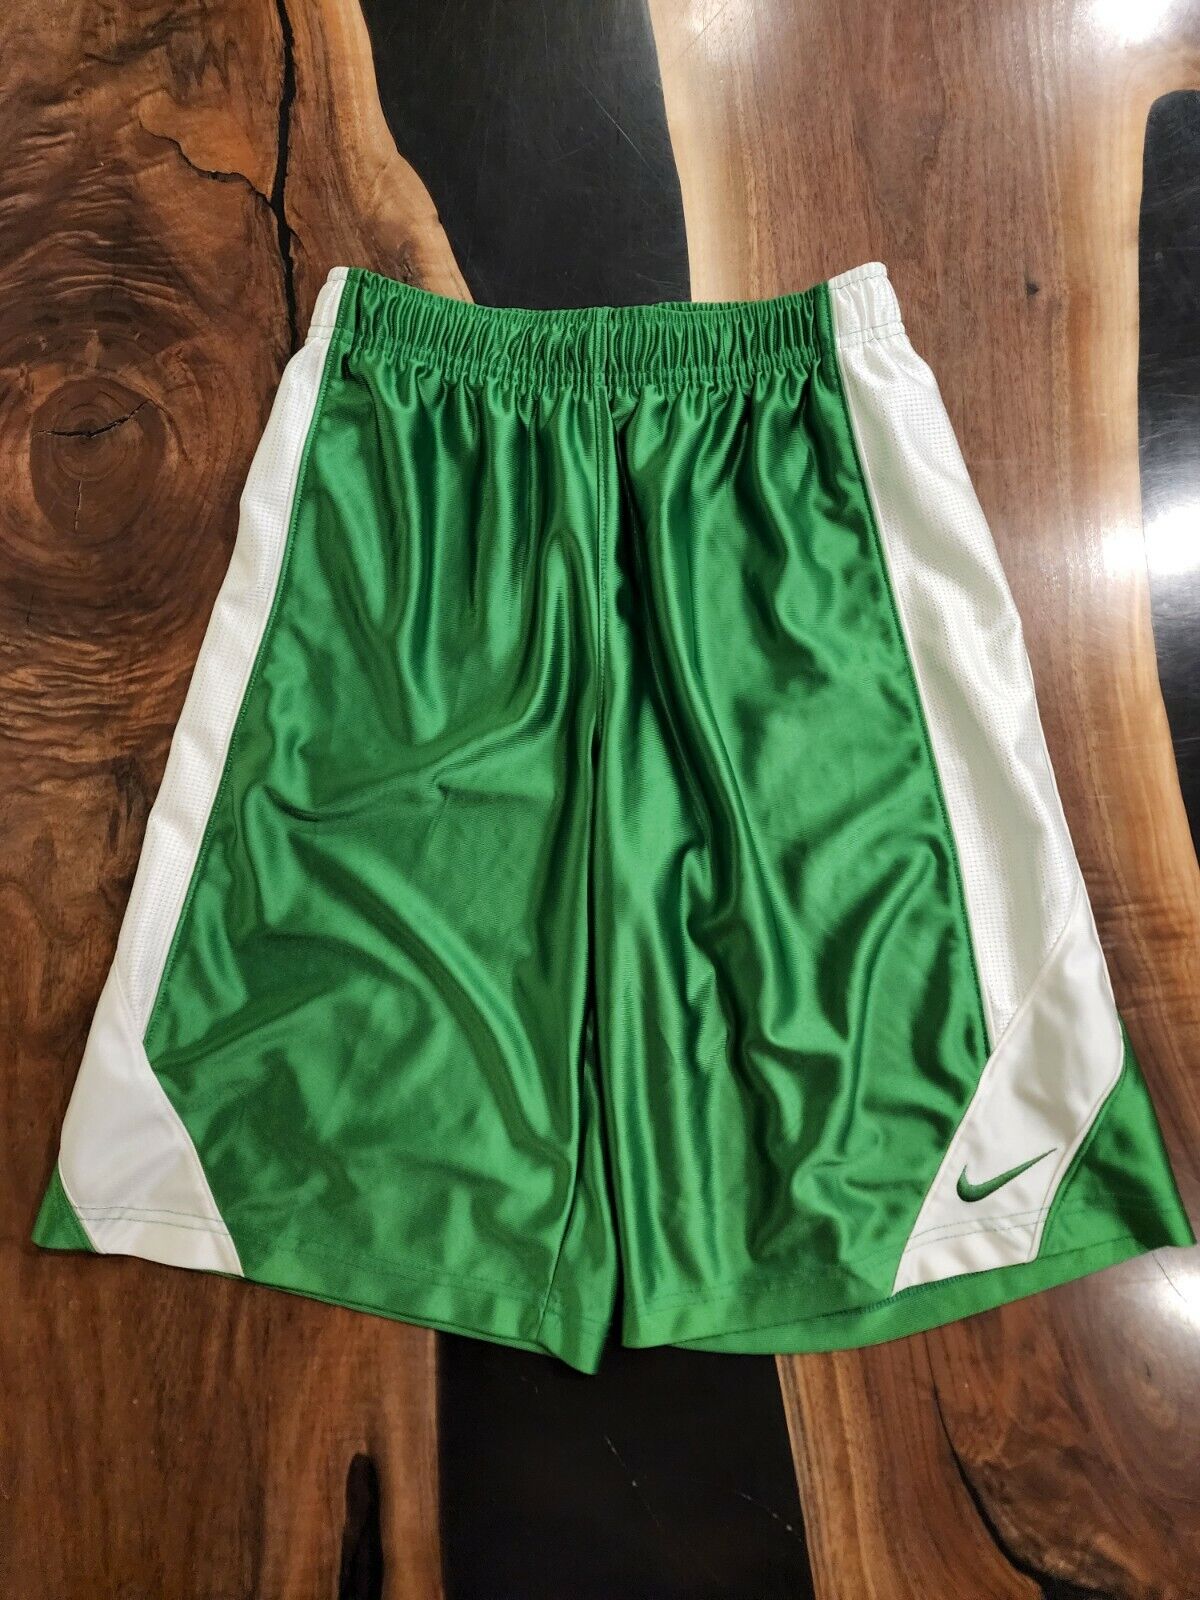 Green Boys Nike Basketball Shorts Size Large